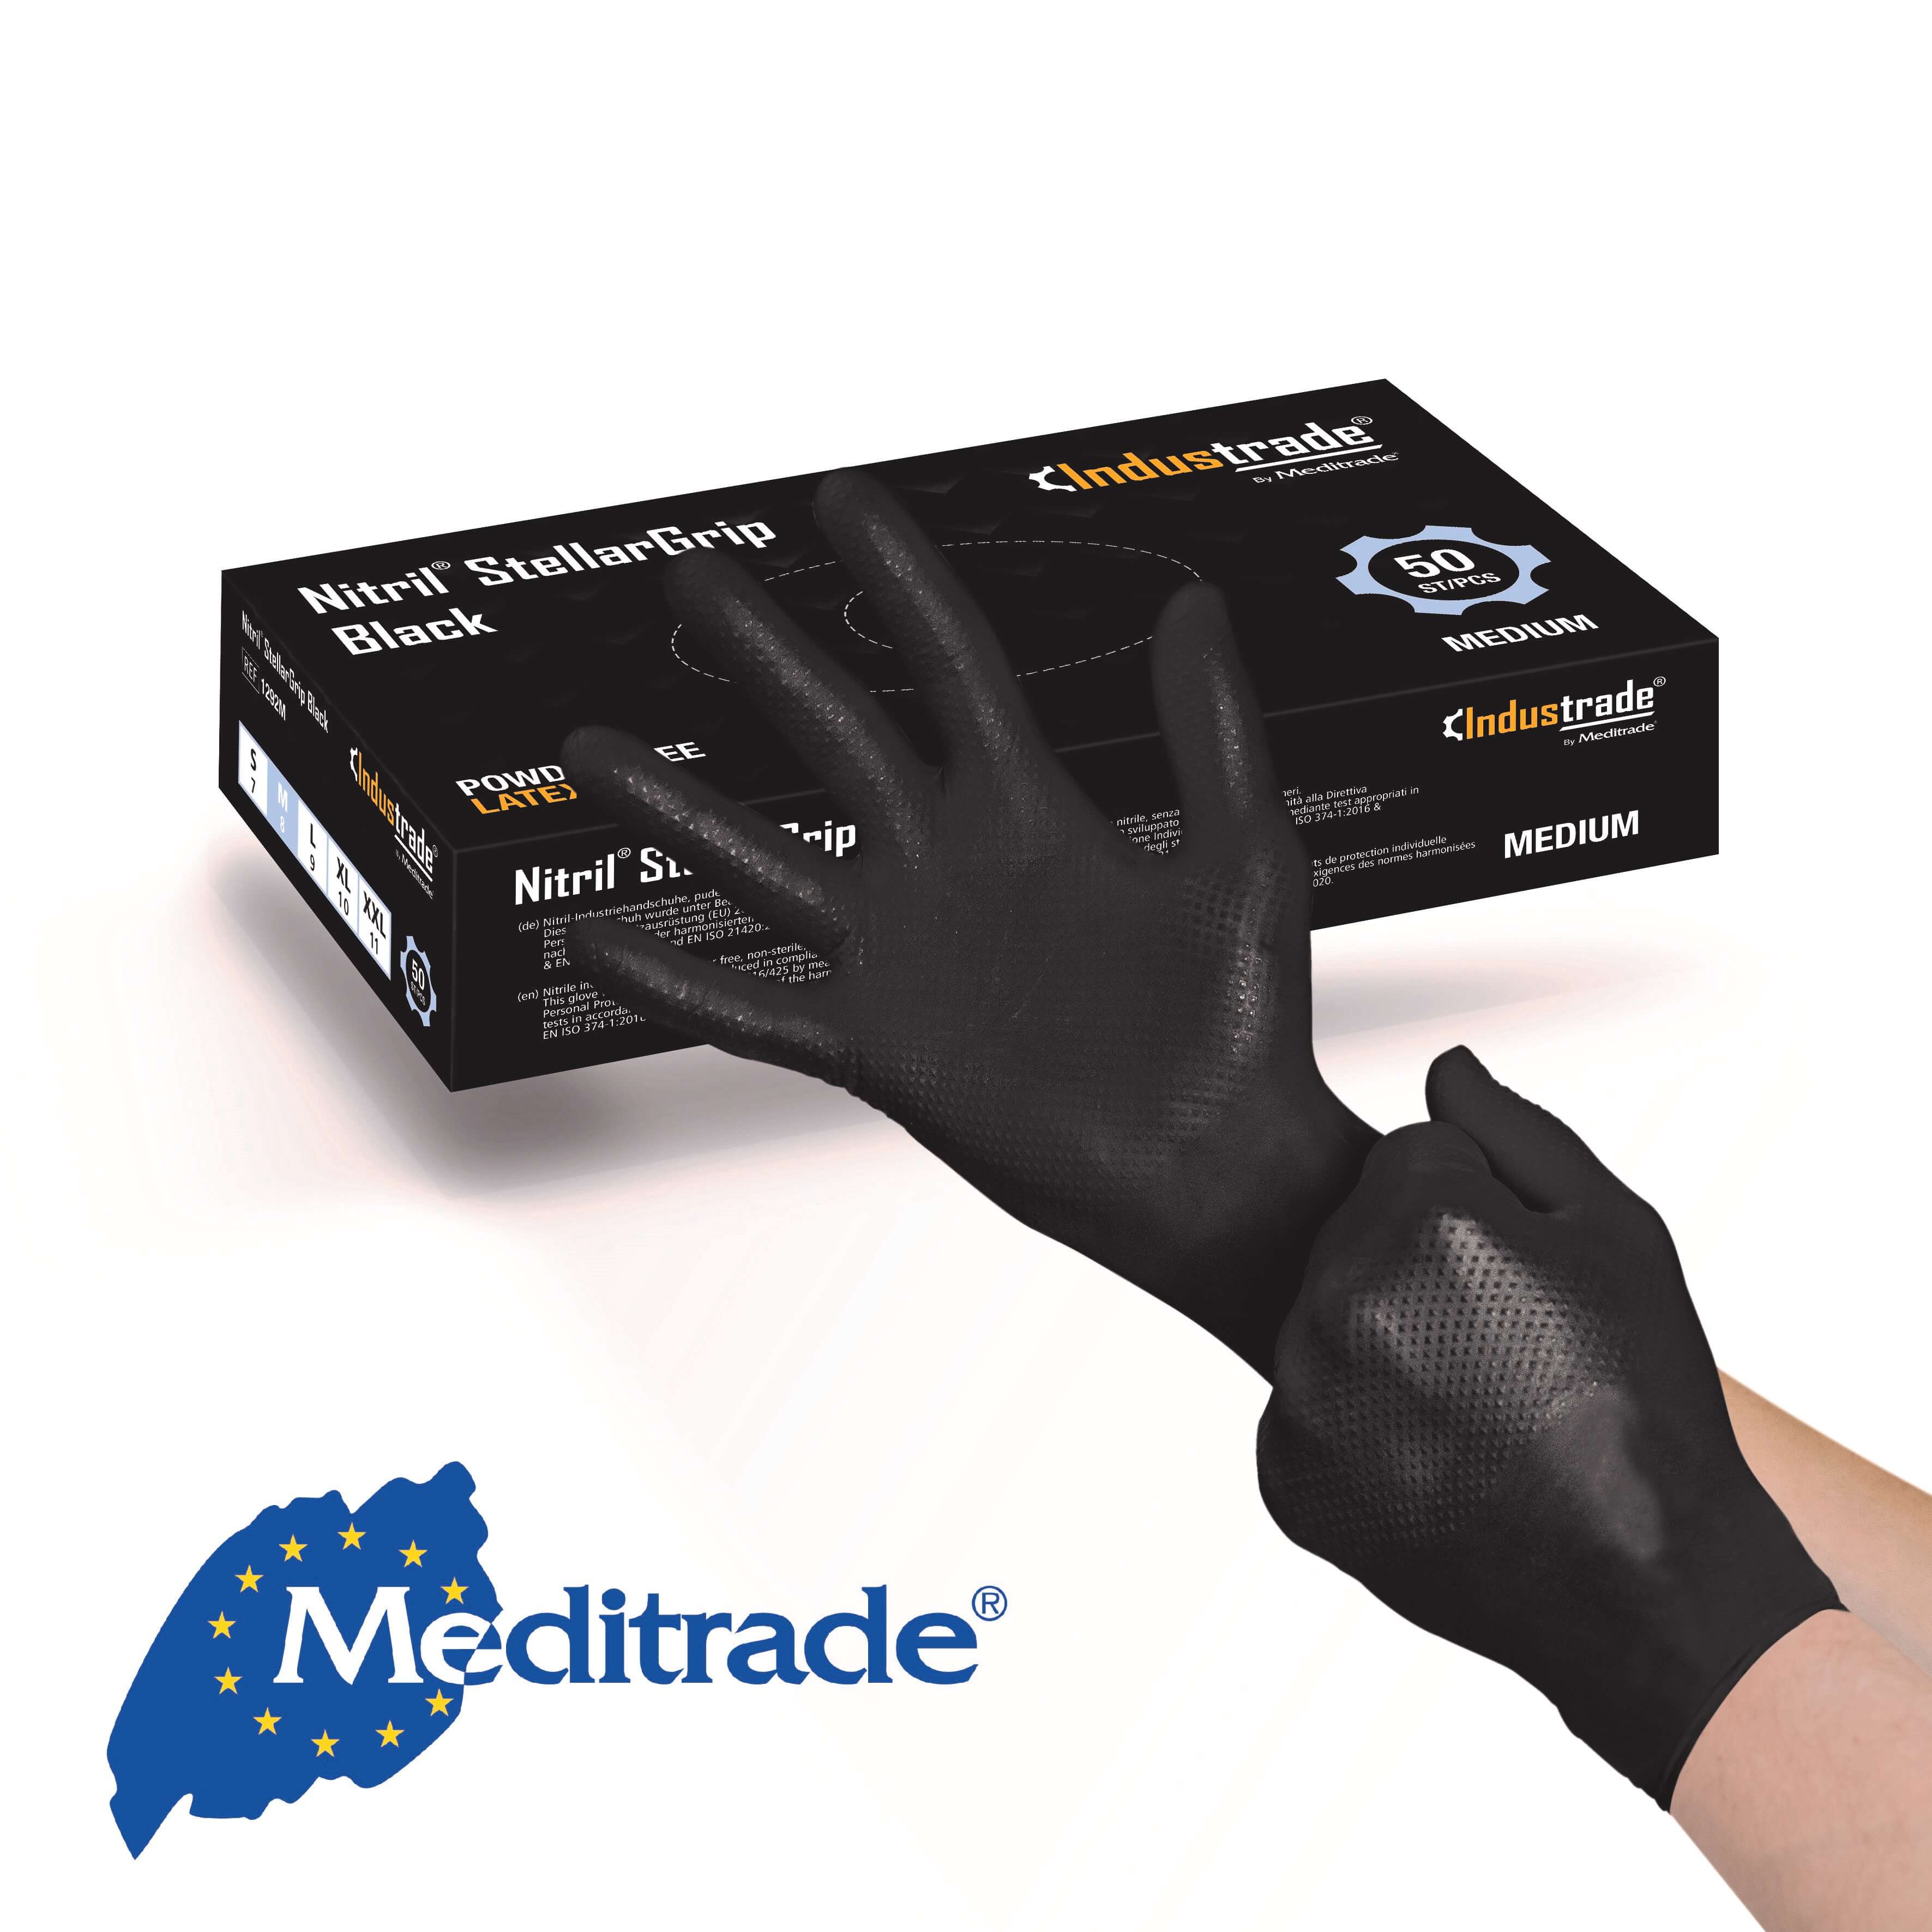 Meditrade Nitril® StellarGrip Black Schutzhandschuh Gr. M